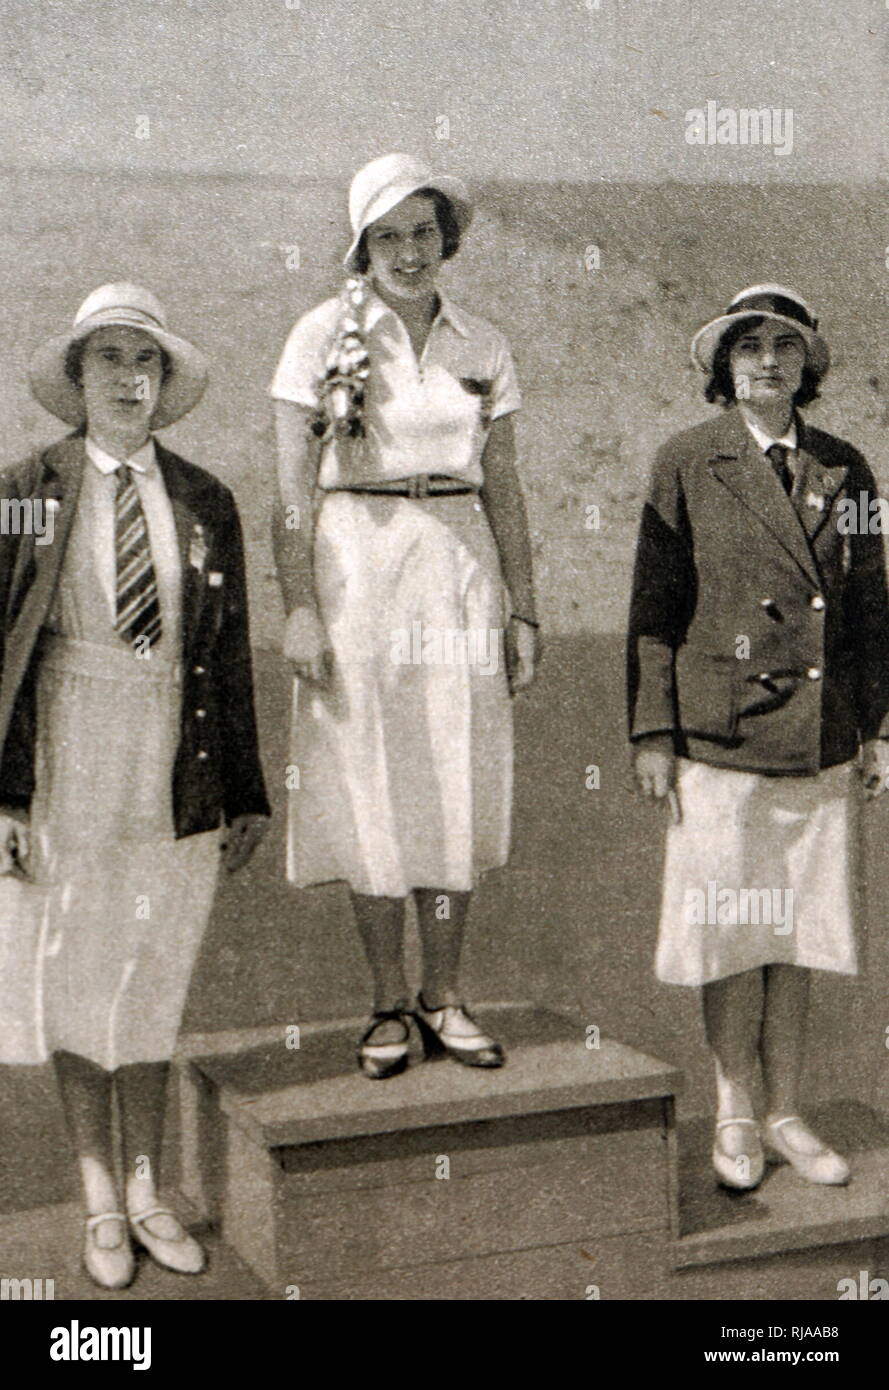 Foto: das Podium der Frauen Folie an der 1932 olympischen Spiele. Ellen Müller-Preis (1912 - 2007) nahm Gold für Österreich, Heather Seymour 'Judy' Guinness (1910-1952) Silber für Großbritannien & bronze Erna Bogen-Bog áti (1906 - 2002) in Ungarn. Stockfoto